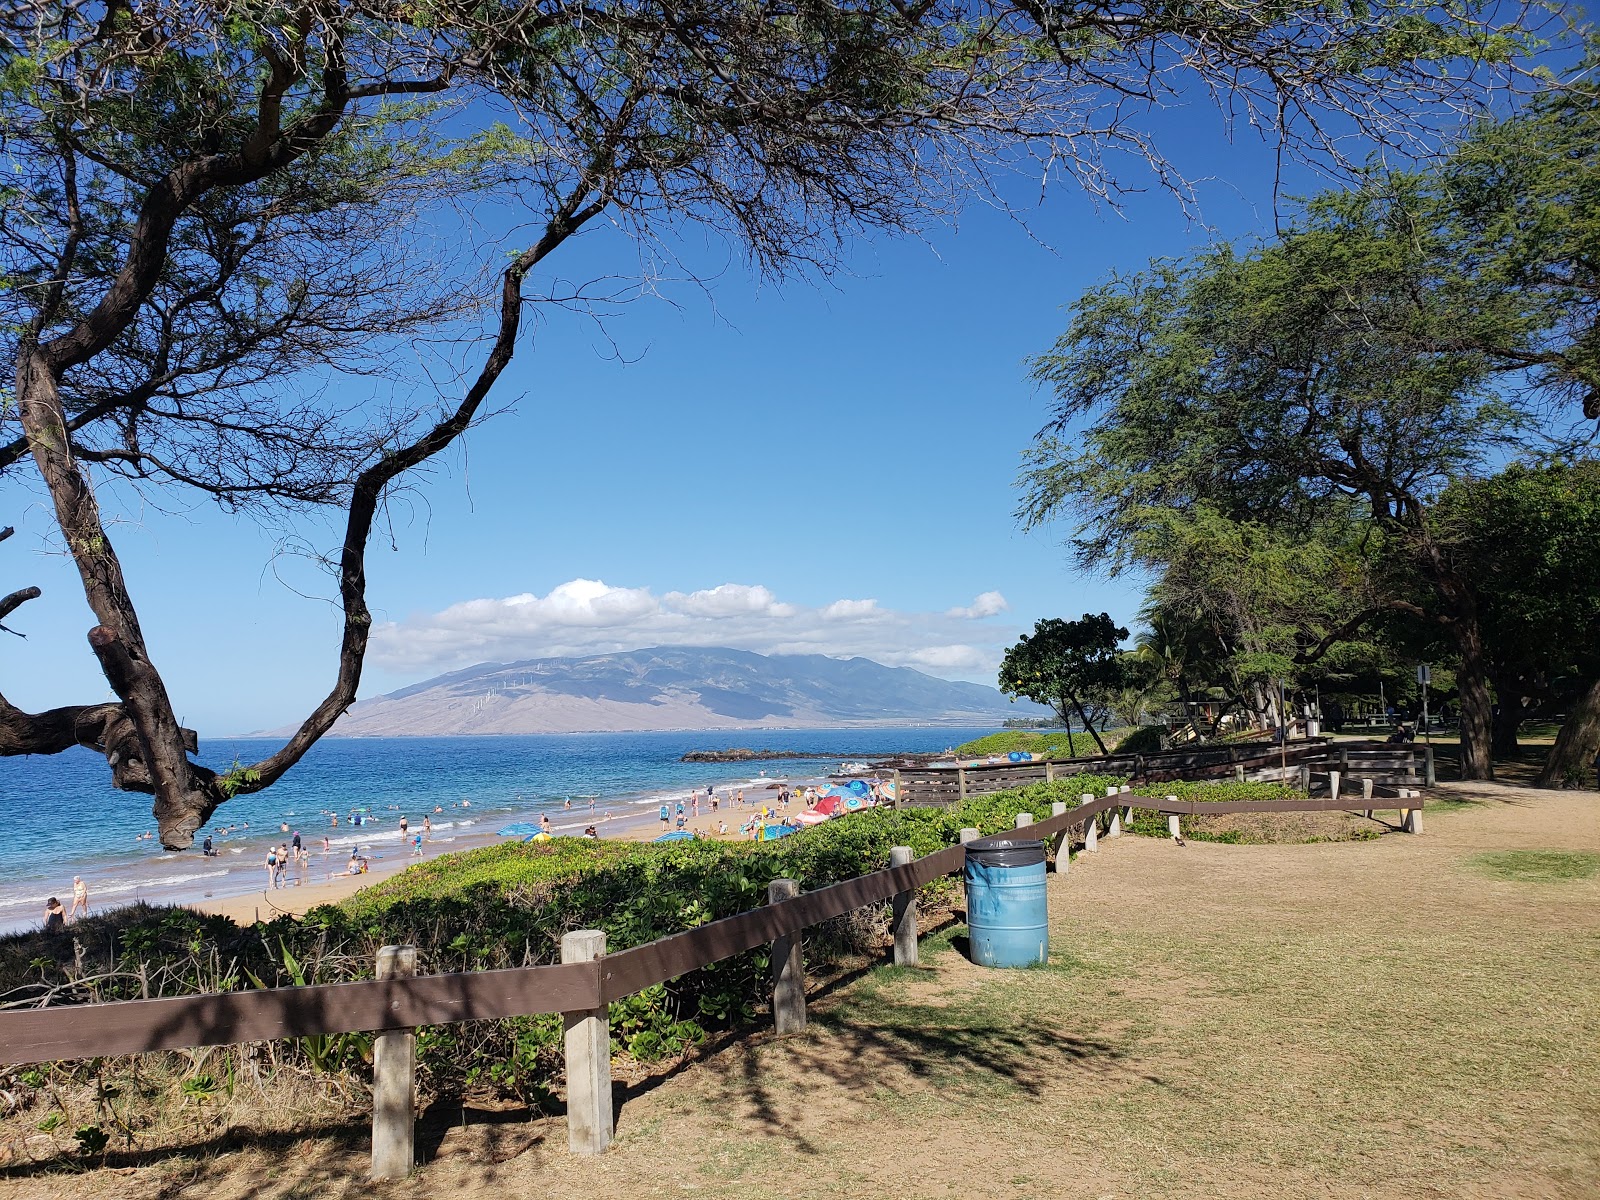 Foto af Ulua Beach - populært sted blandt afslapningskendere